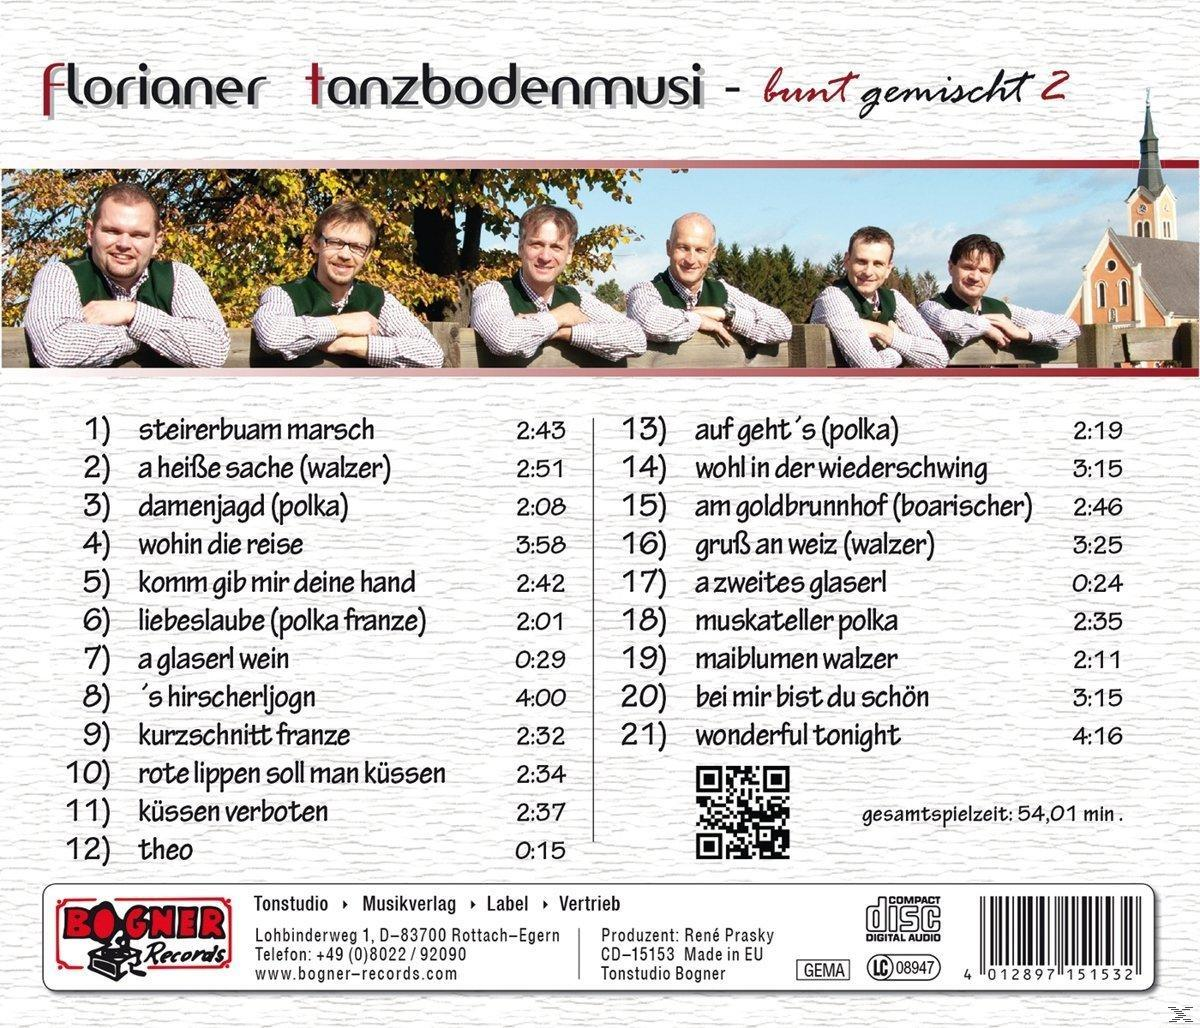 Florianer Tanzbodenmusi - 2 (CD) Bunt - Gemischt